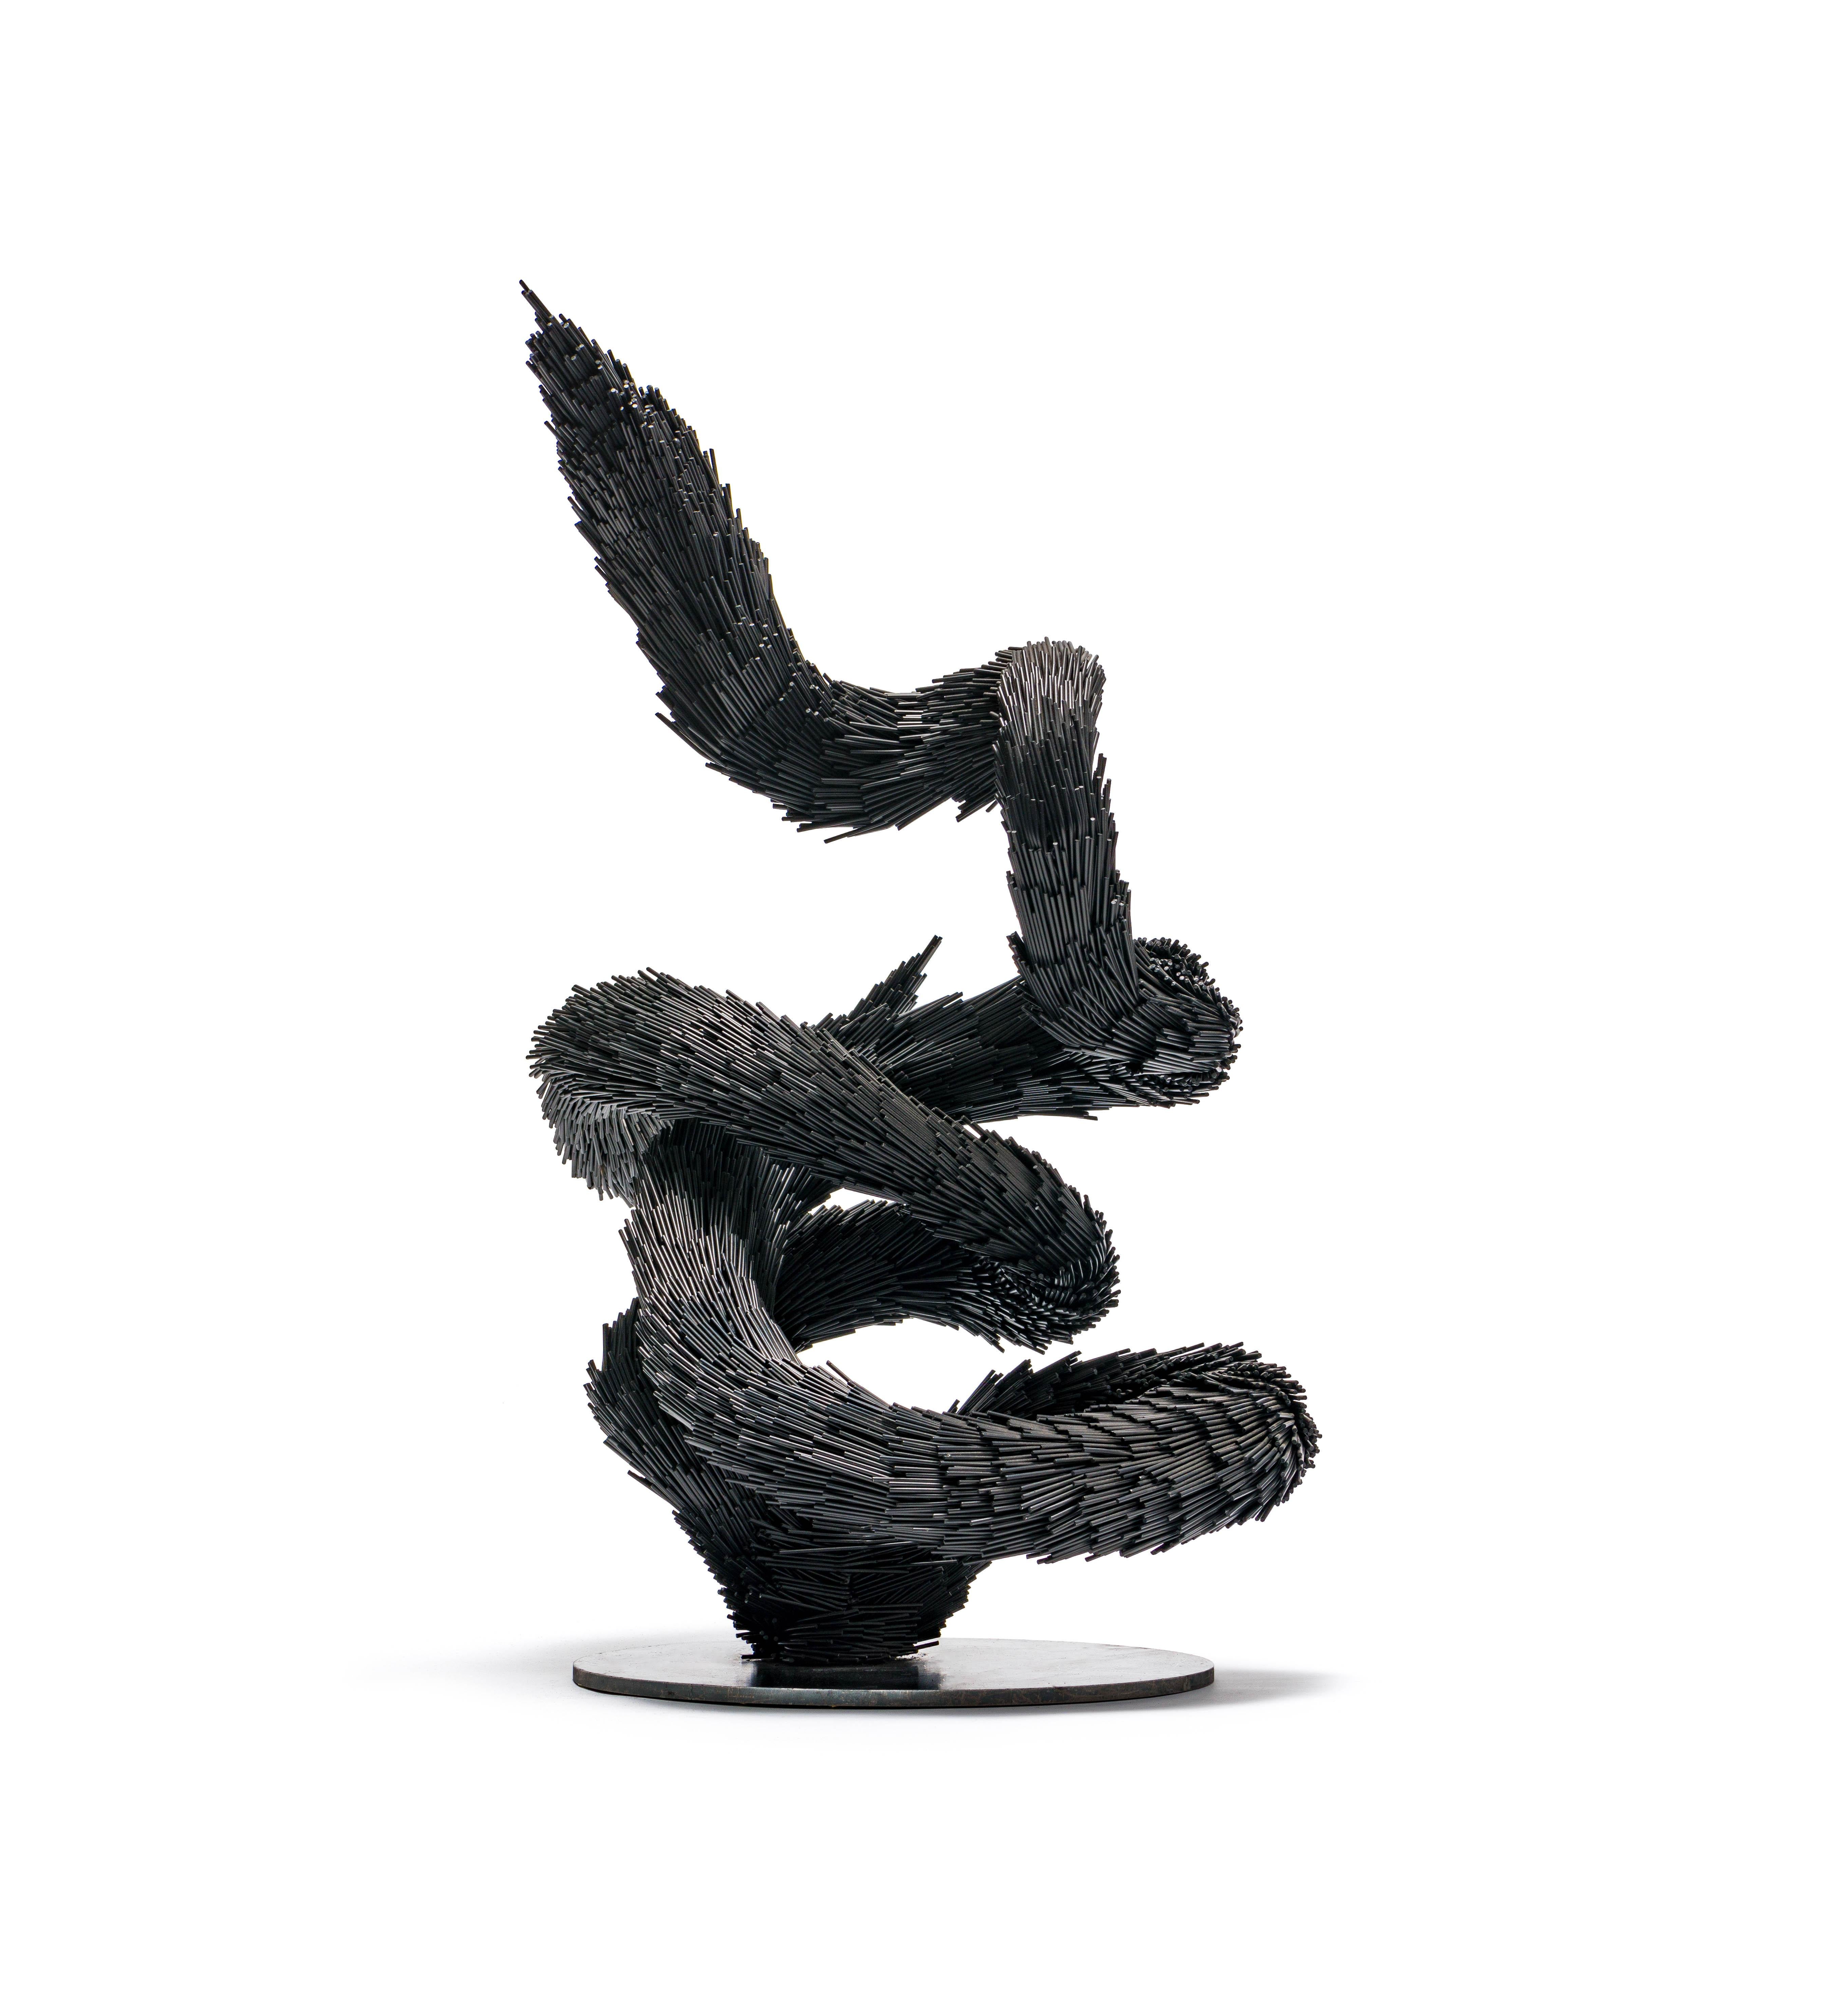 Figurative Sculpture Jake Michael Singer - Sculpture "sans titre", Sculpture contemporaine en acier en forme de serpent noir.